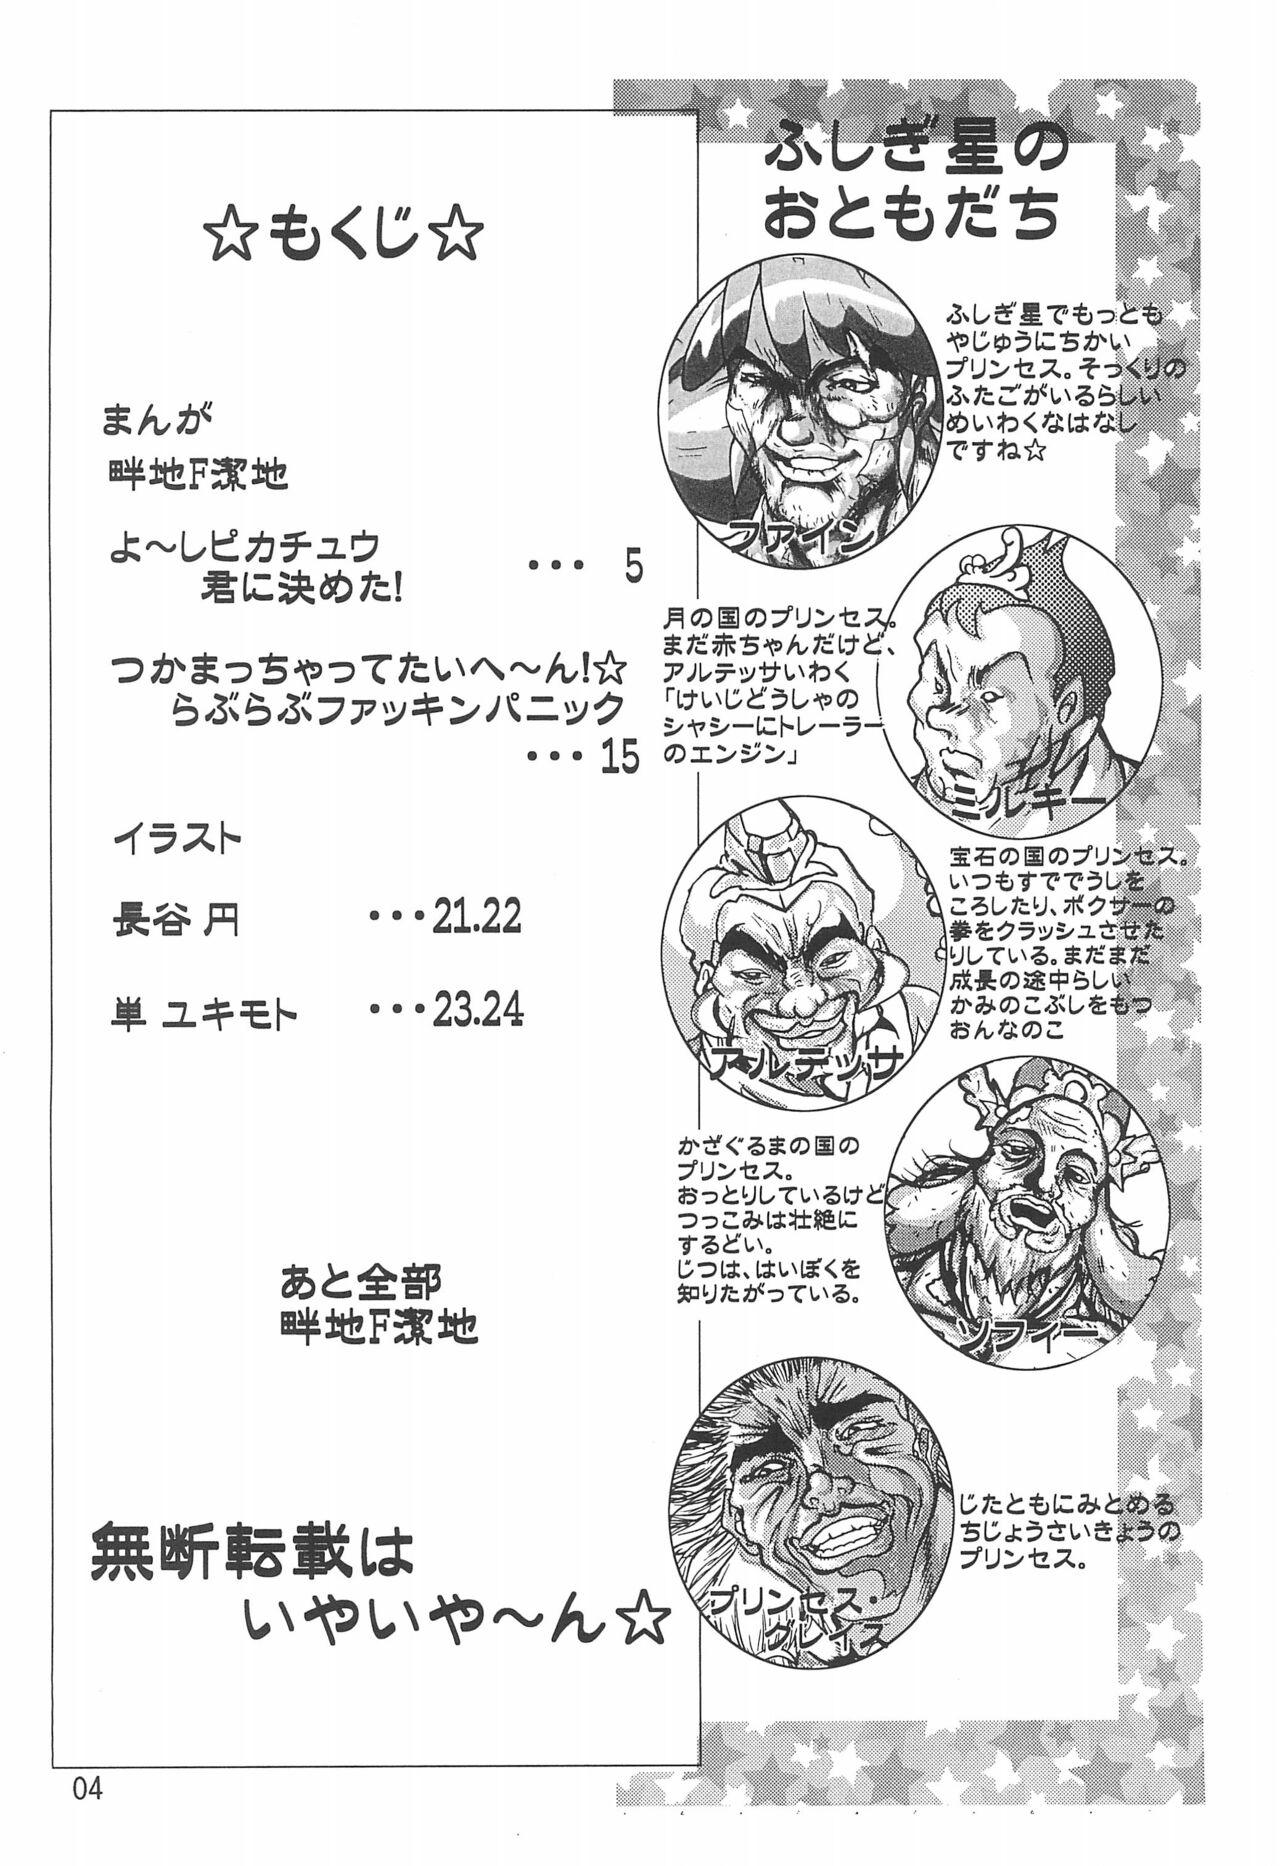 Oldman Gyouretsu no dekiru Ouritsu Kyoukansho Taiyou no Kiba-hen - Street fighter Urusei yatsura Fushigiboshi no futagohime | twin princesses of the wonder planet Gozada - Page 4